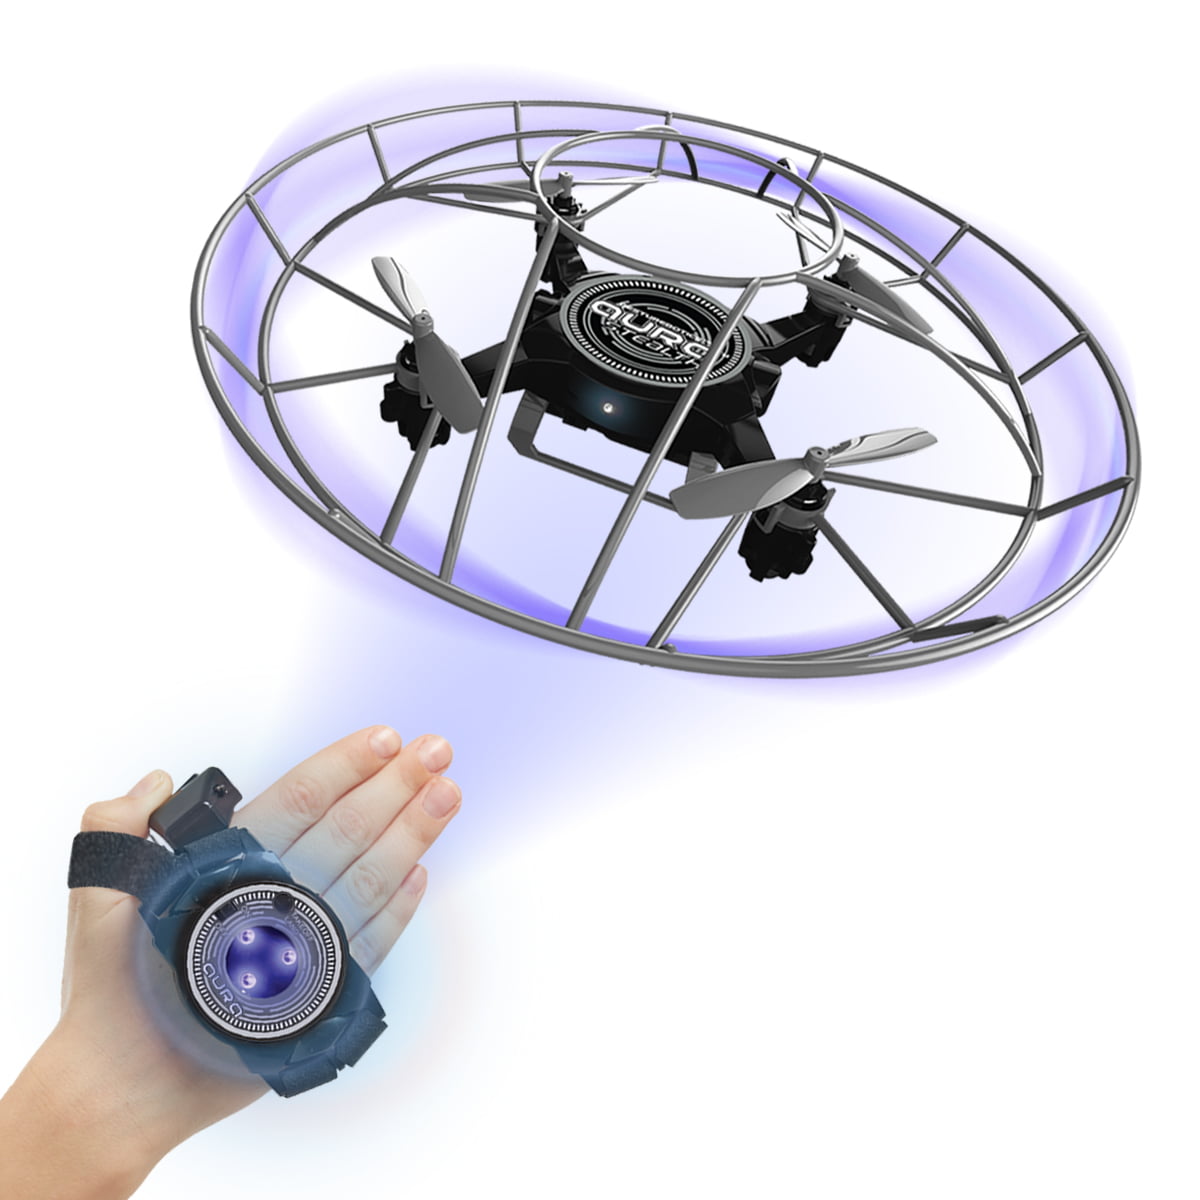 Gesturebotics Aura Stealth Drone With Hand Controller Interactive LR723 NEW 